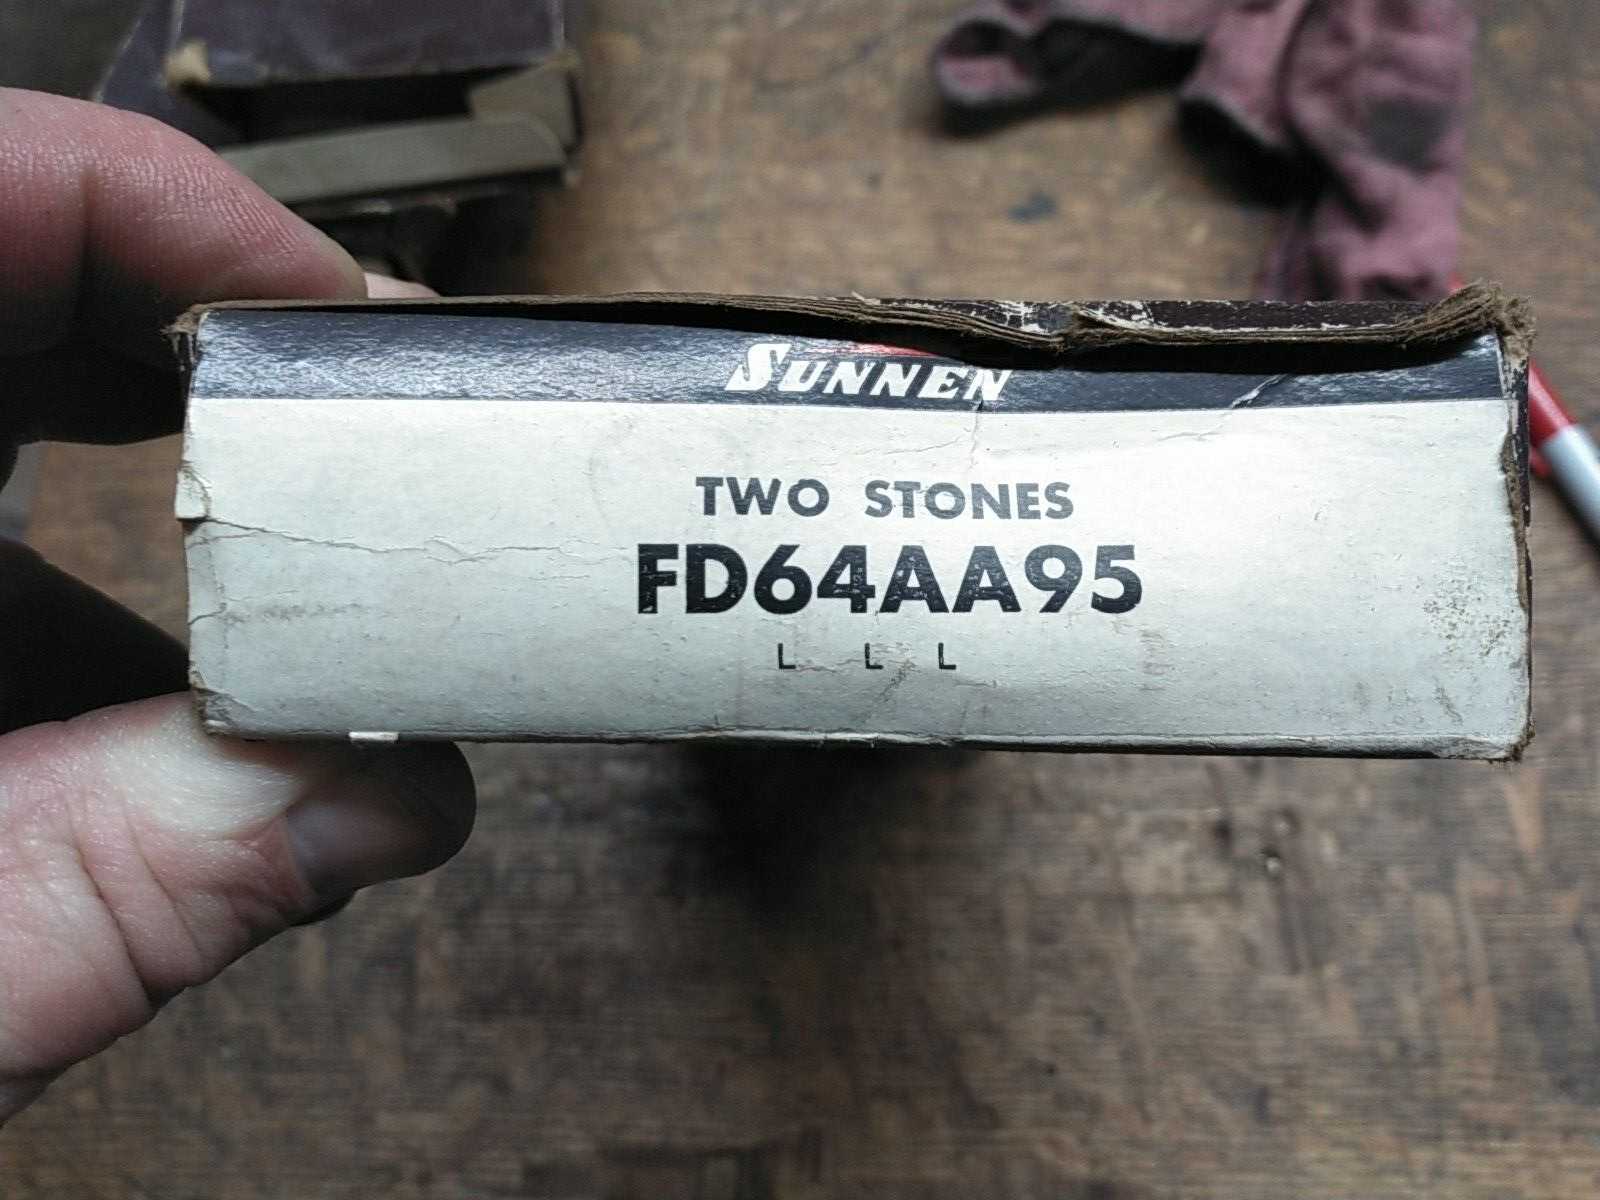 (Box of 2) Sunnen FD64-AA95 External Honing Stones Grit 500 Aluminum Oxide